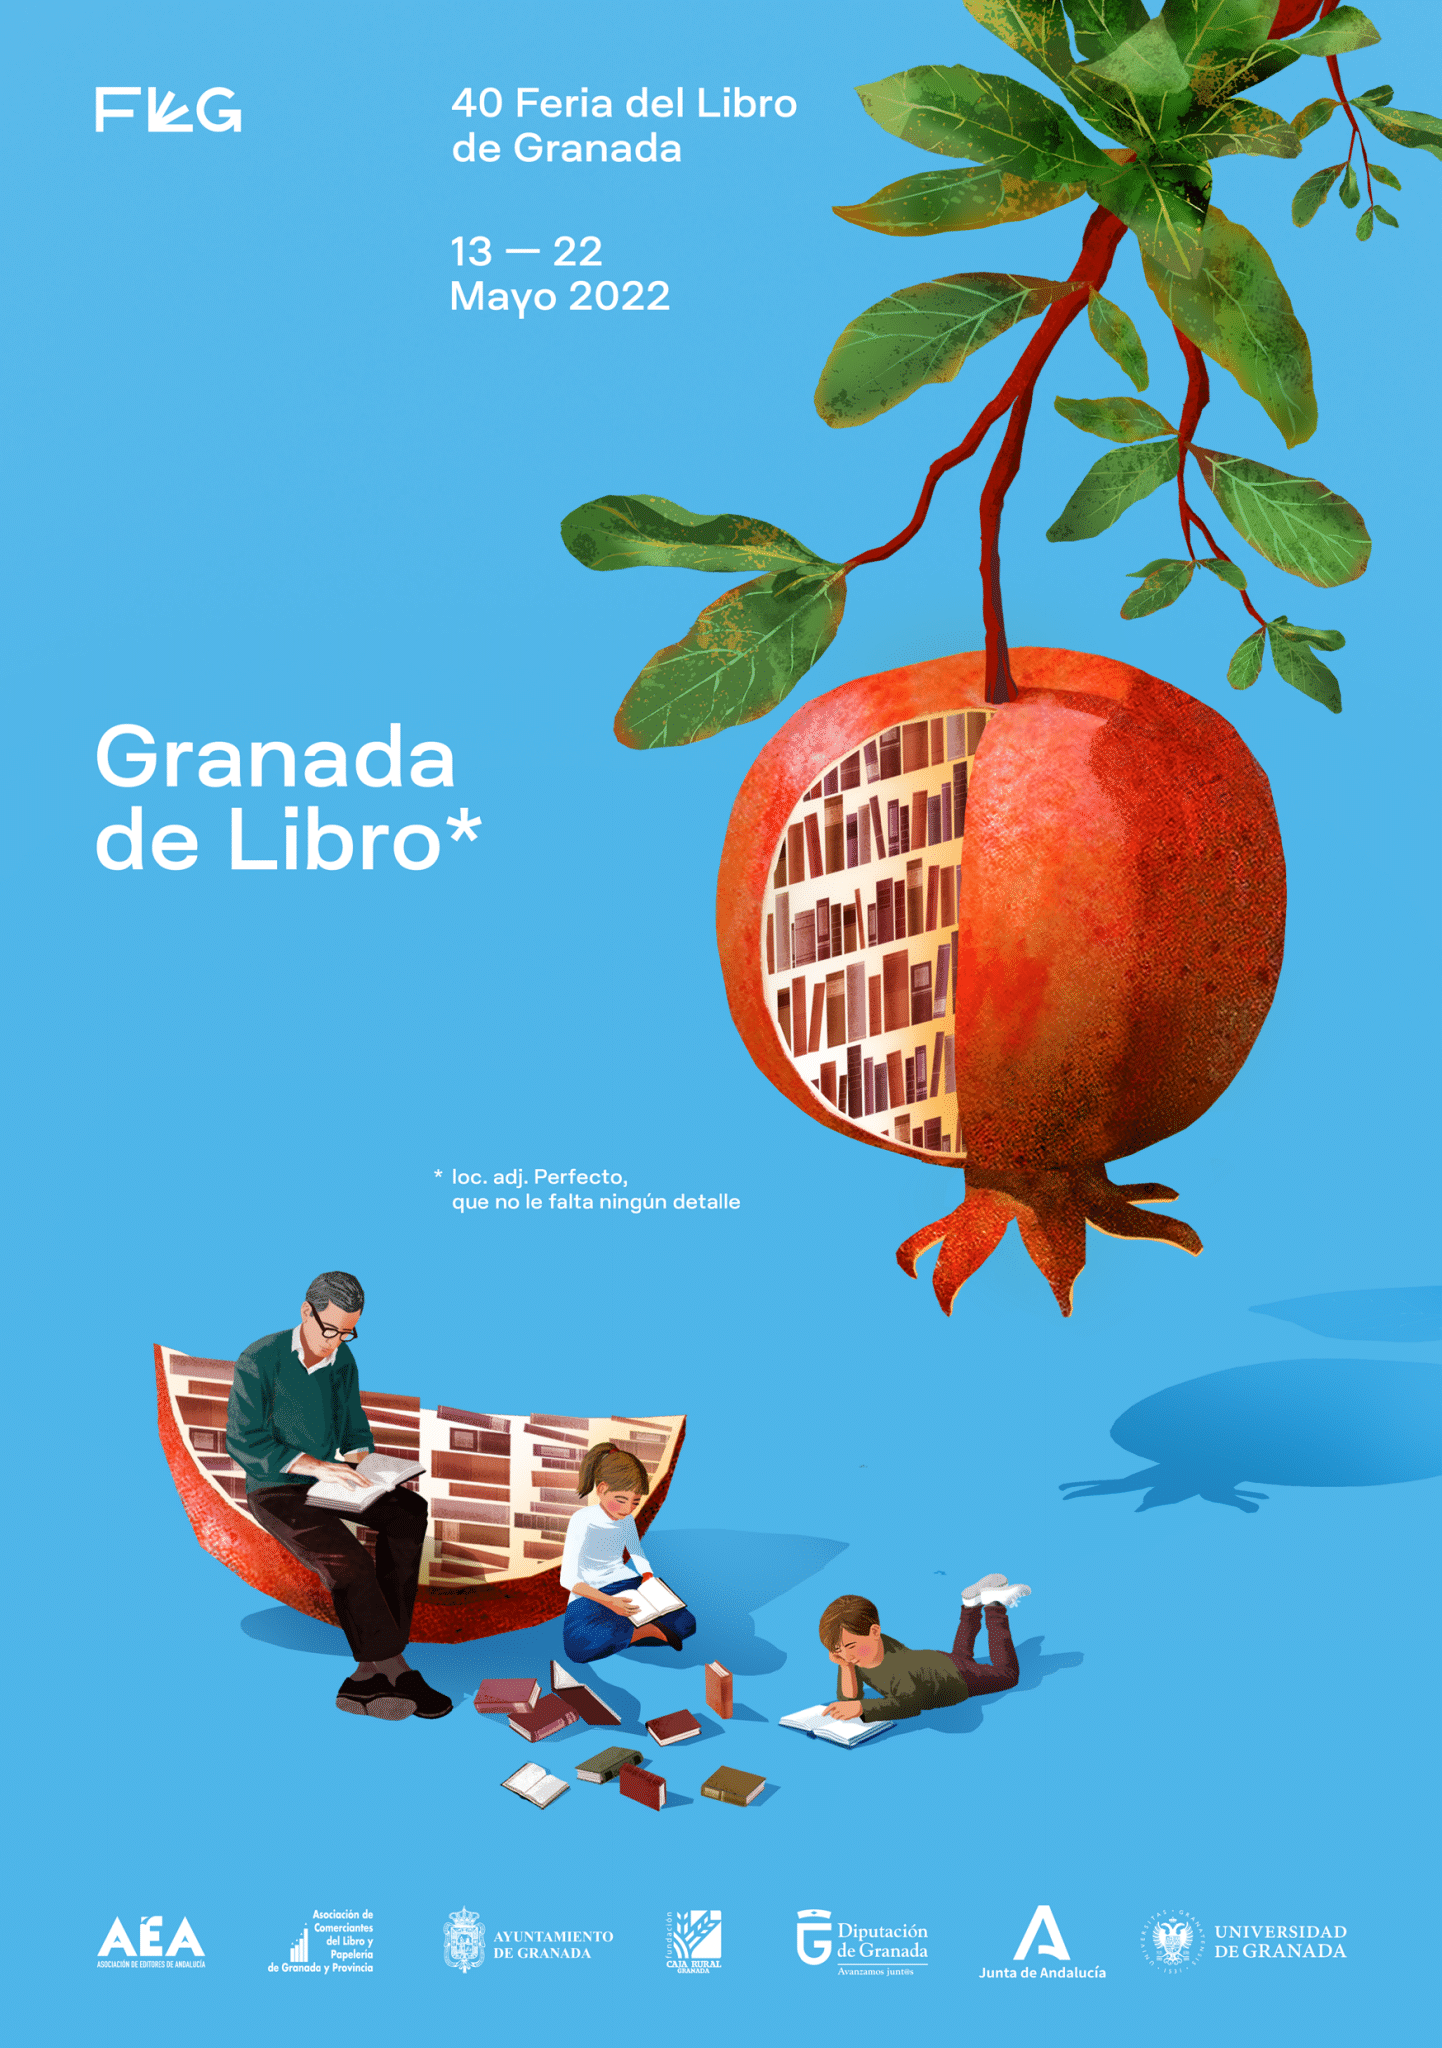 La Feria del Libro de Granada celebra 40 años difundiendo la literatura